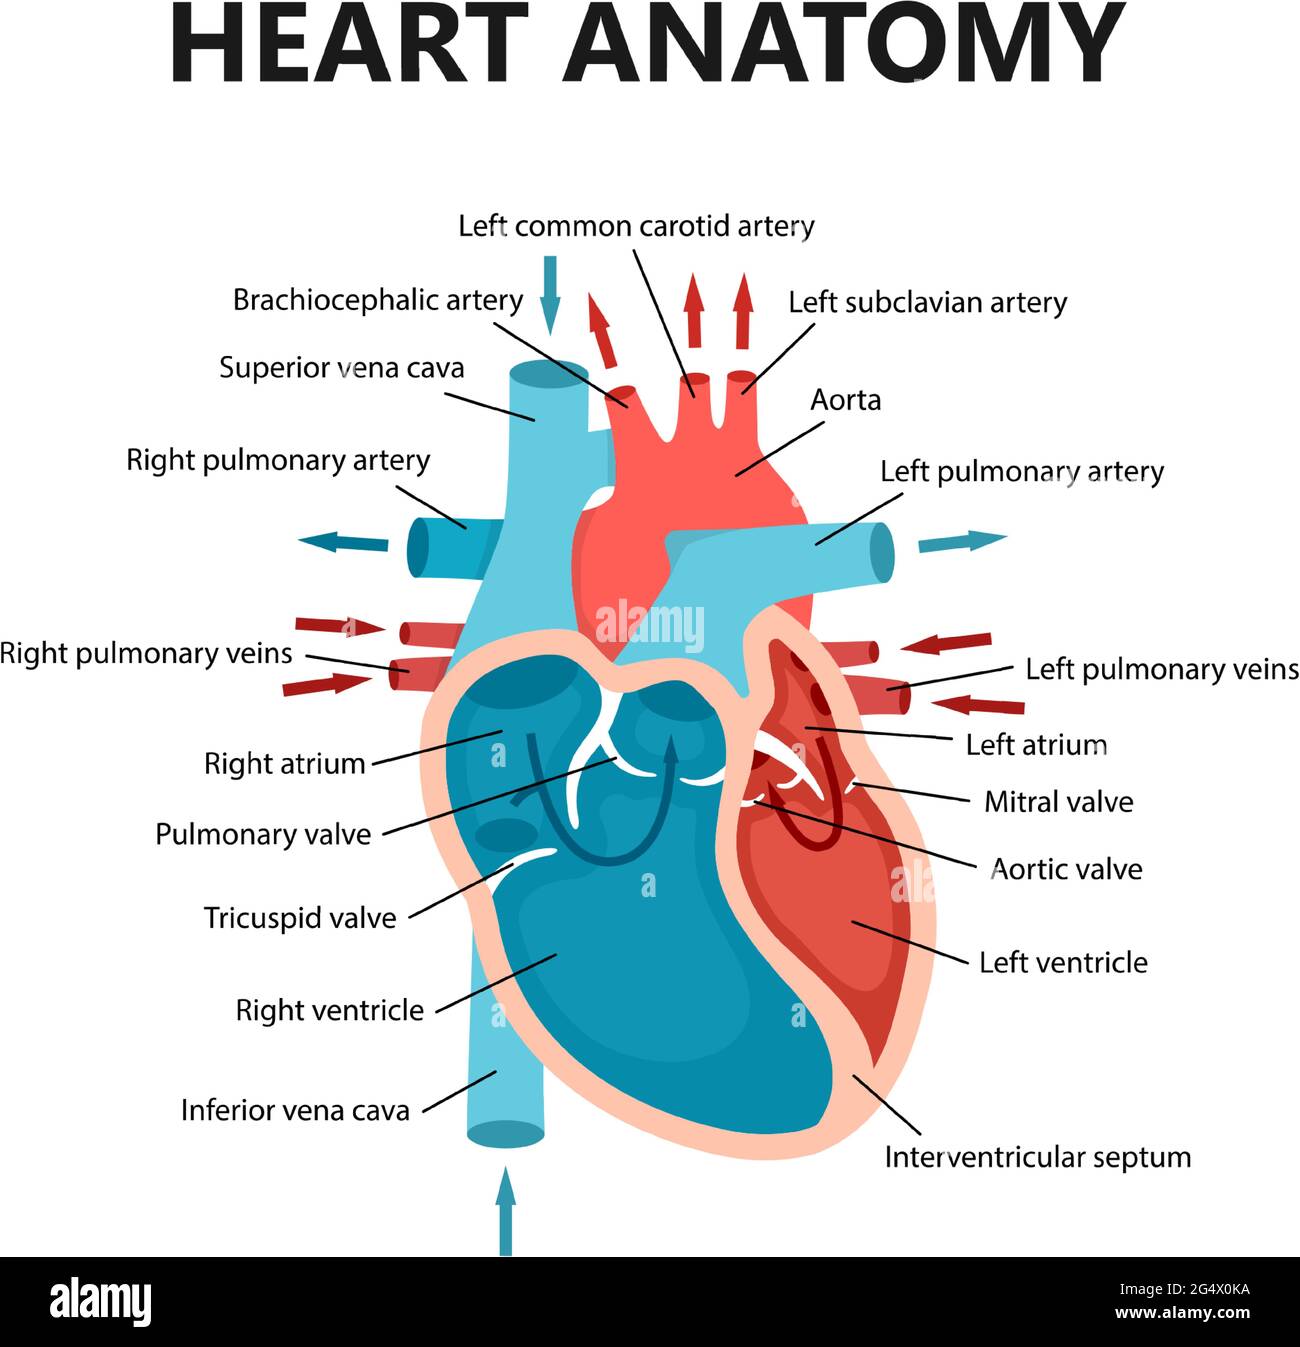 Diagramm der Nahaufnahme des Herzblutflusses. Kardiologisches Konzept. Pädagogisches Diagramm mit menschlichem Herzquerschnitt. Stock Vektor